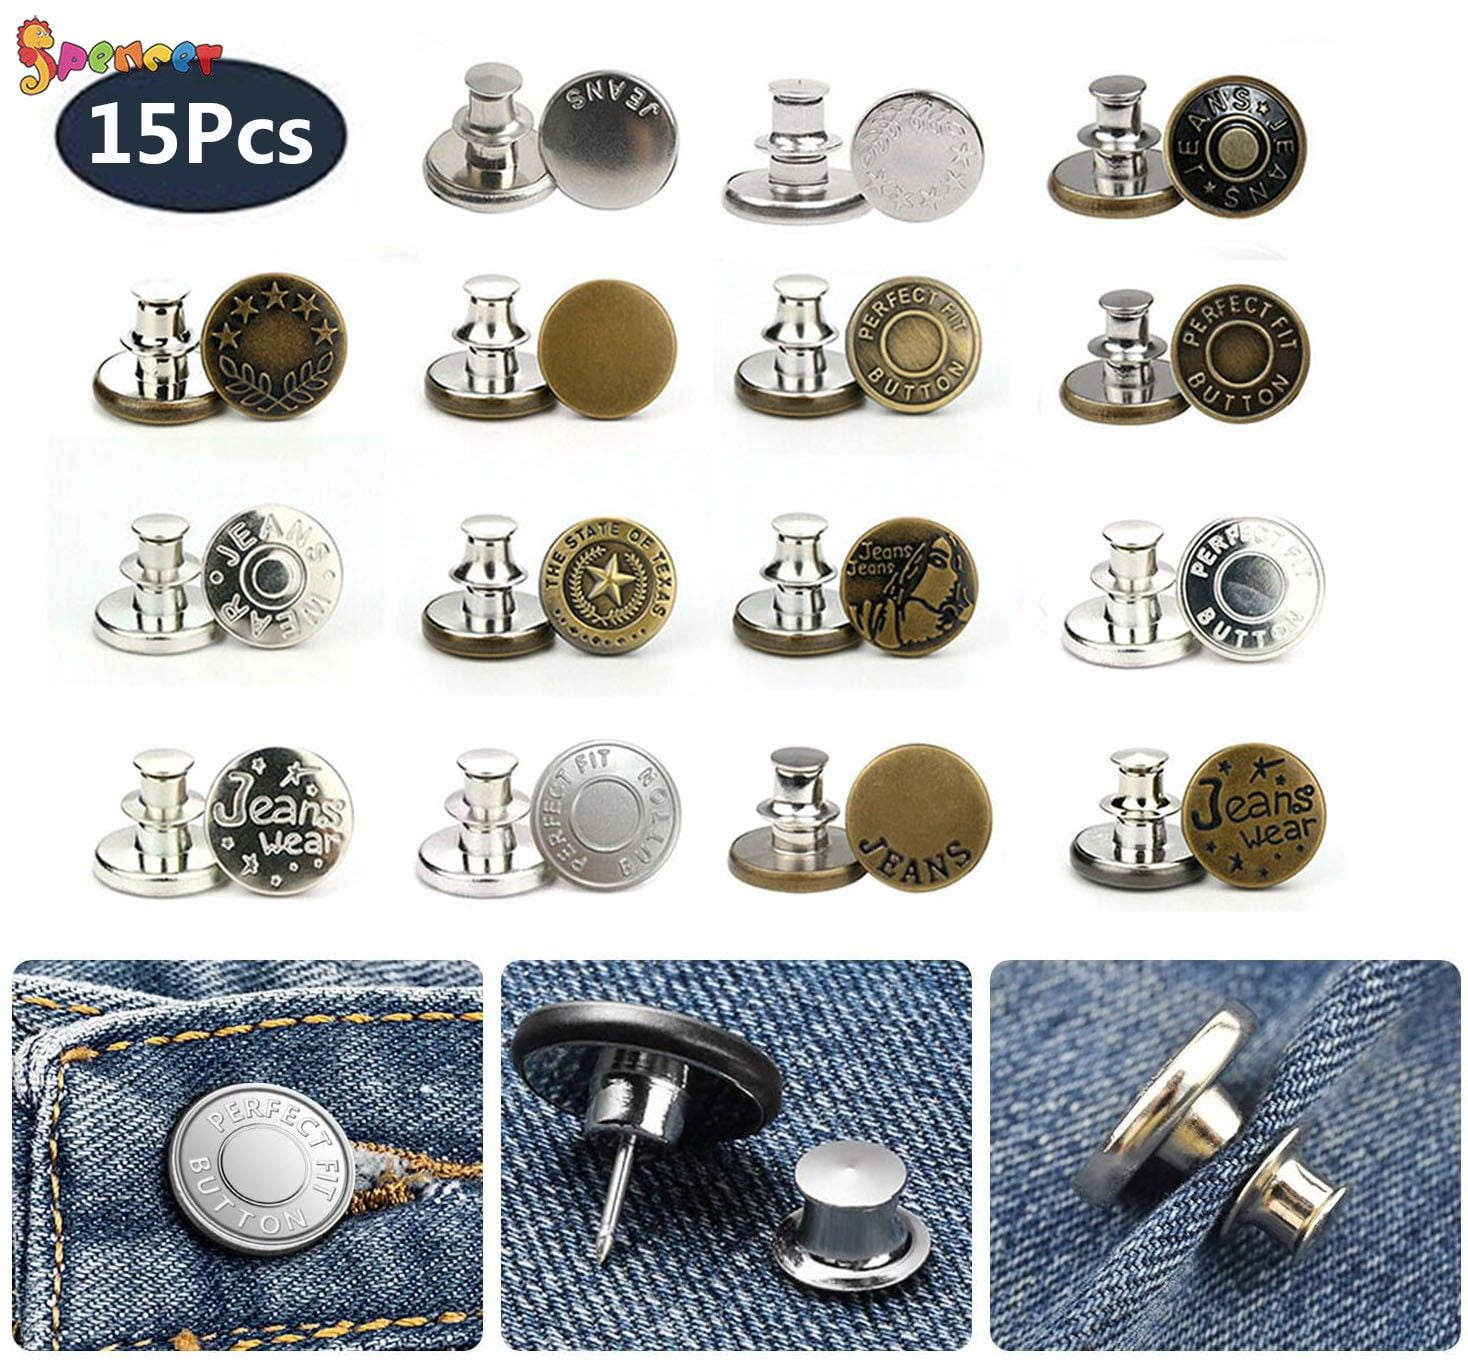 Coats & Clark Zipper Pulls, Metal, Silver 1 Ring